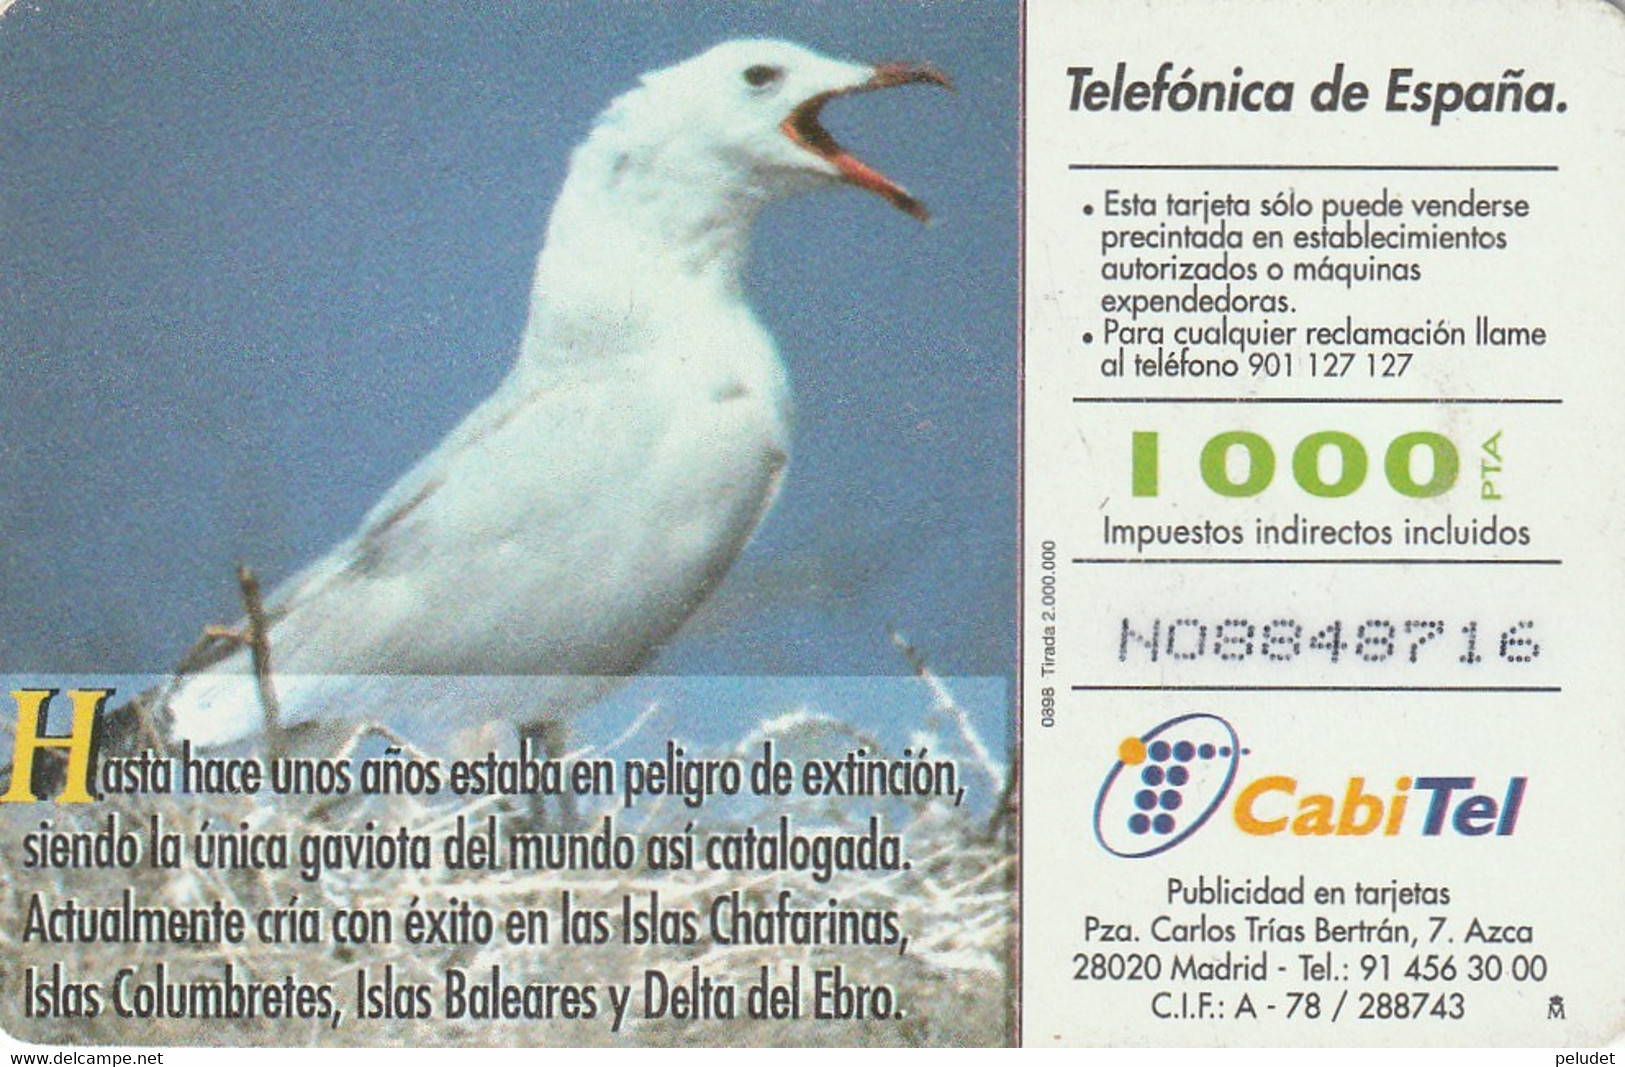 Spain, Espagne, Telefonica Fauna Iberica Gaviota De Audouin - Other & Unclassified